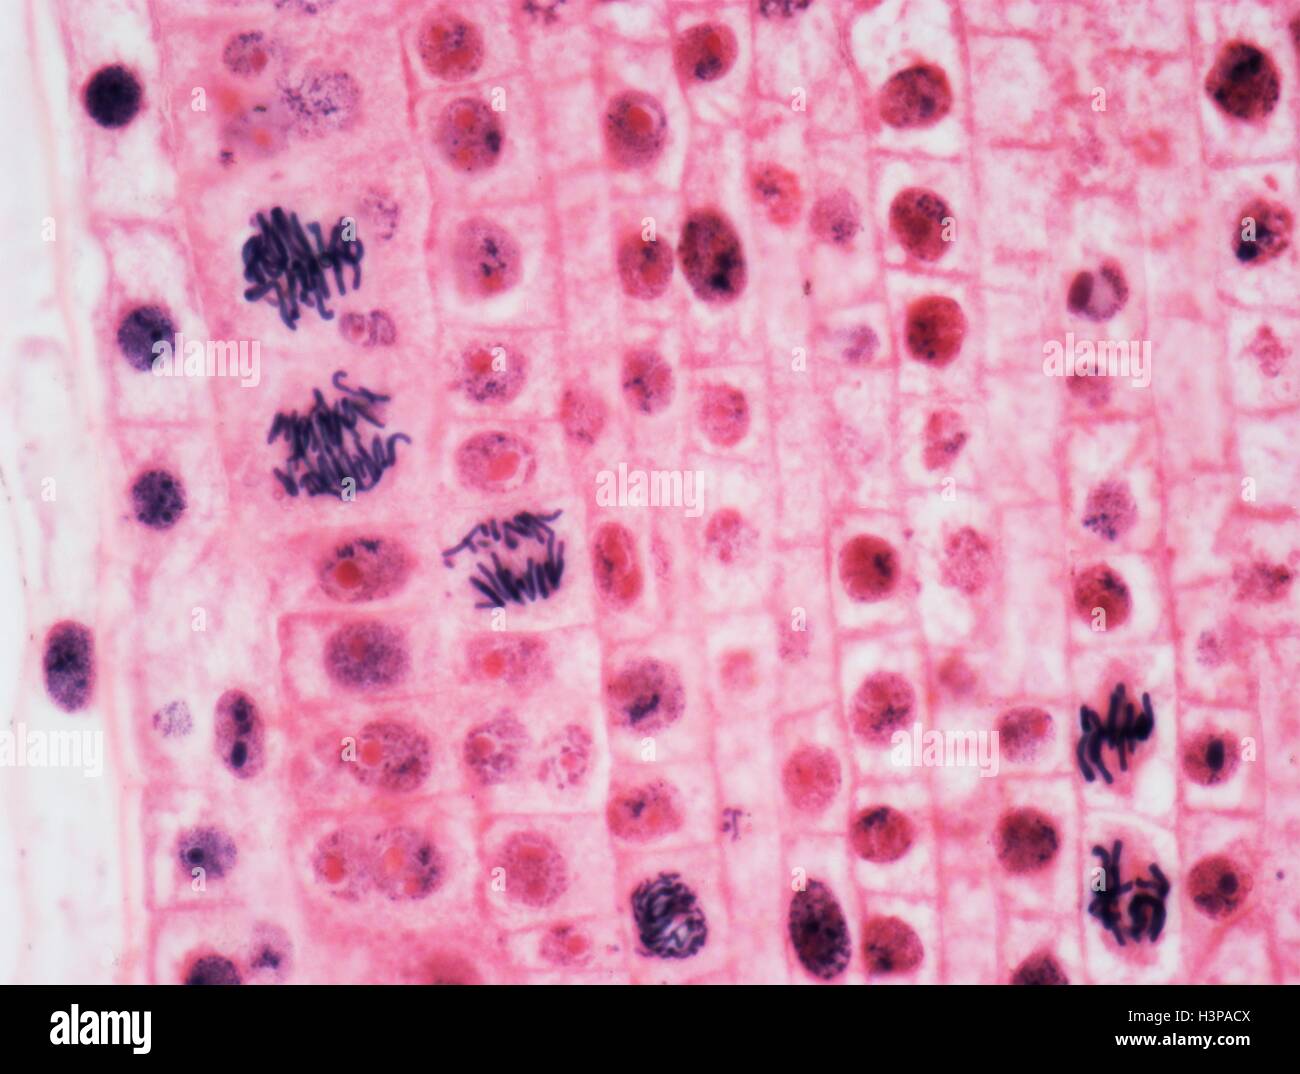 Mitose. Leichte Schliffbild der Wurzelspitze der Zwiebel (Allium Cepa) Zellen in Mitose (nuclear Division). Vergrößerung: X600 wenn bei 10 cm breite gedruckt. Stockfoto